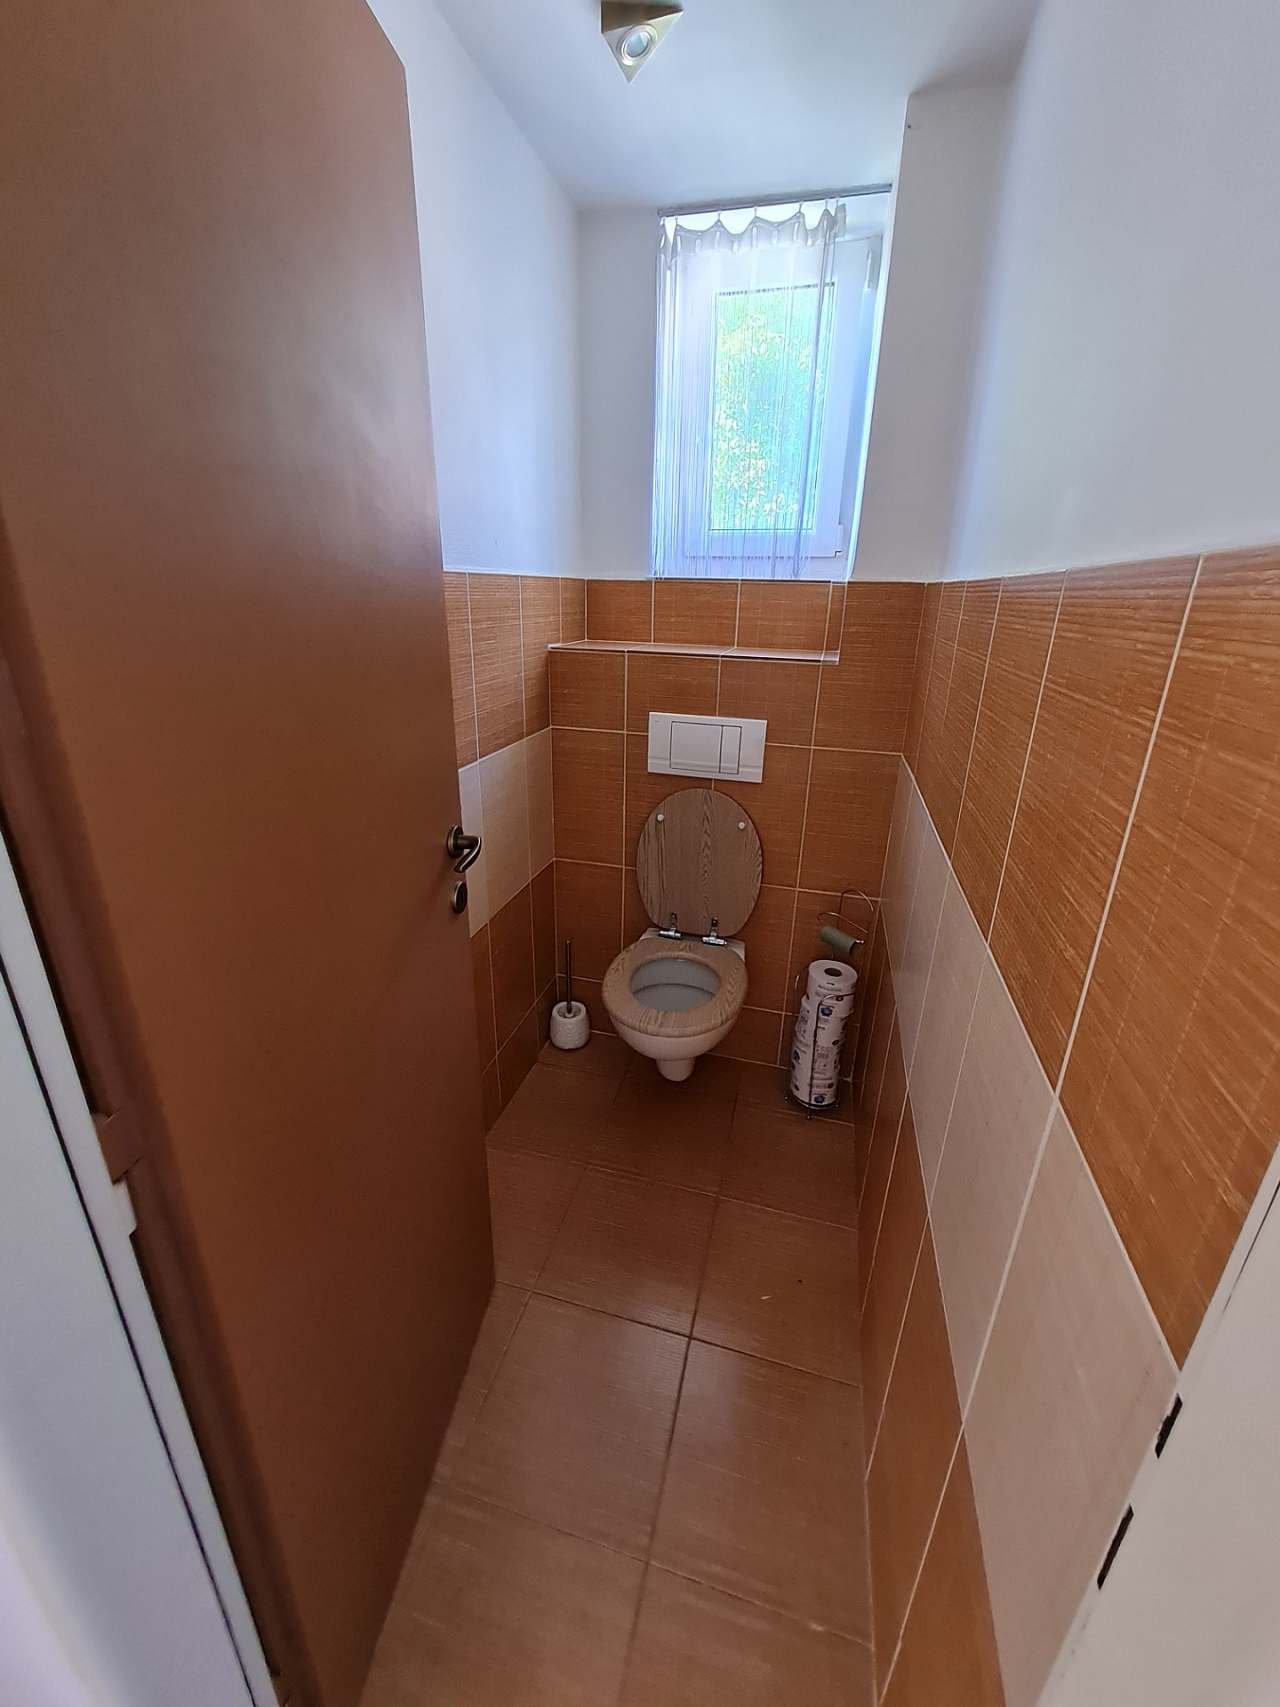 WC tầng dưới chung cư